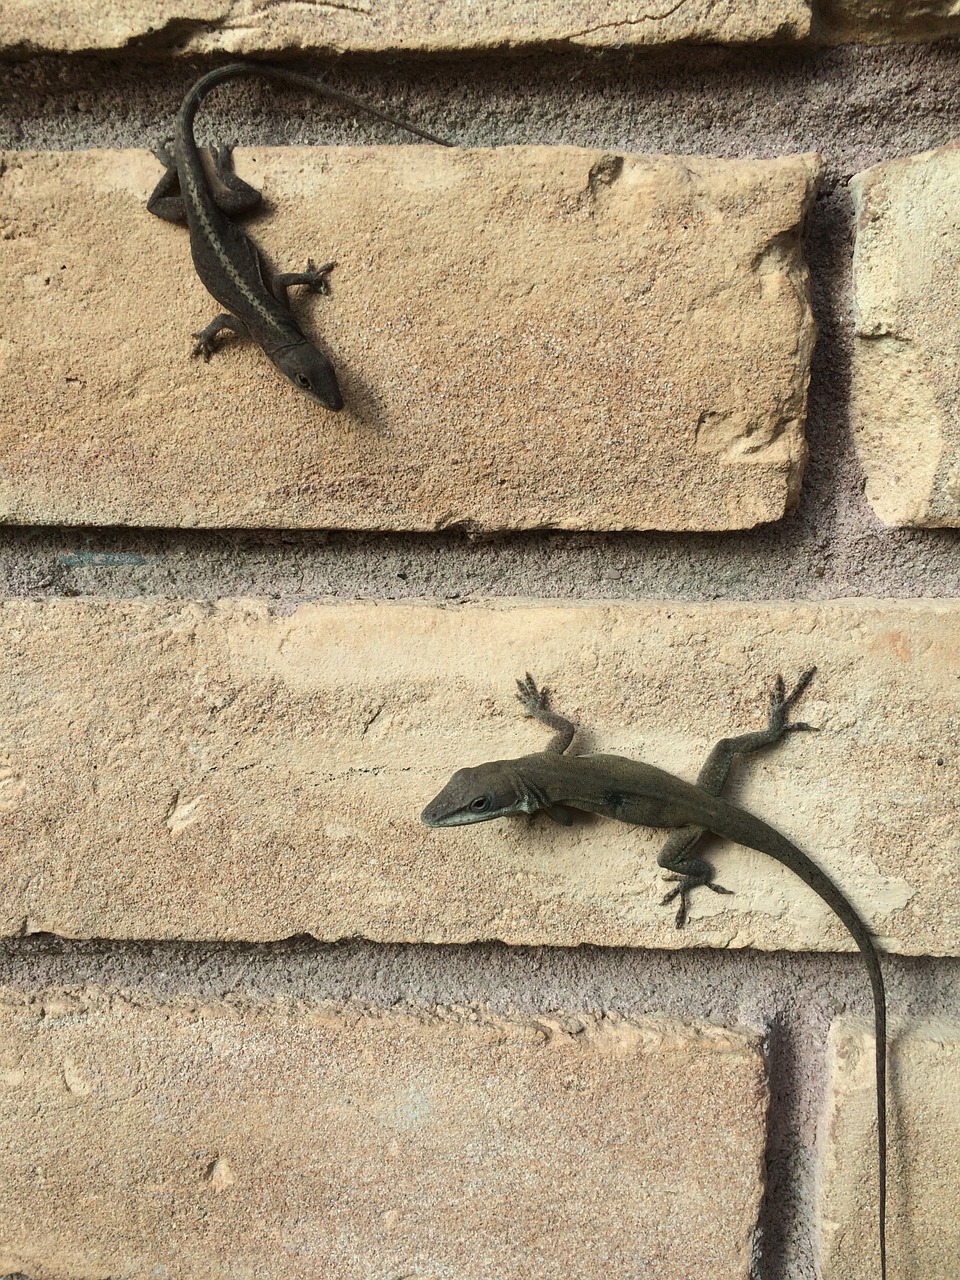 lizards brick wall outside free photo